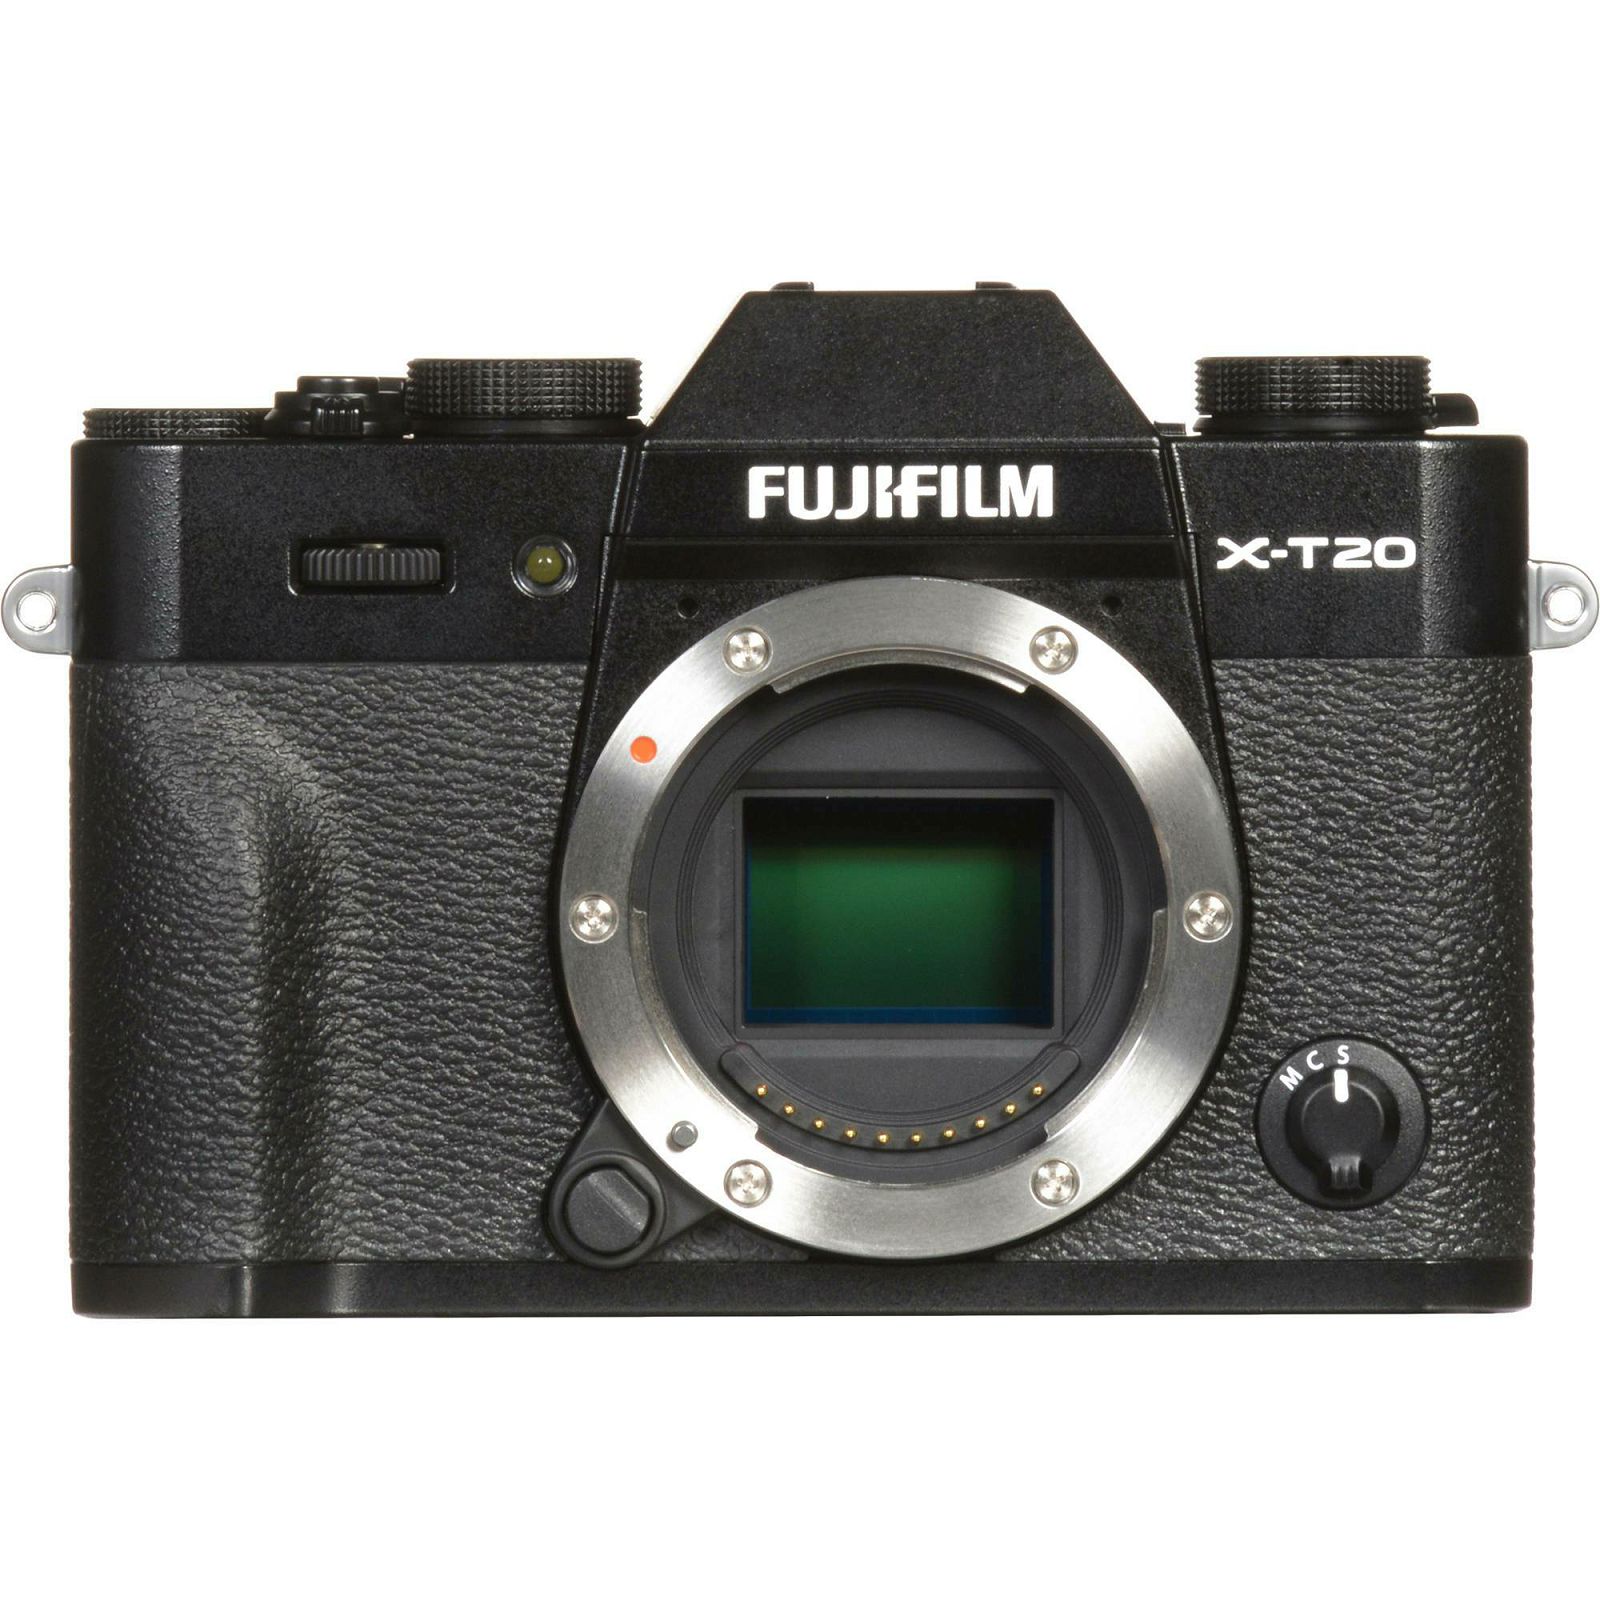 Fujifilm X-T20 + XC 16-50 f3.5-5.6 OIS II Black crni digitalni mirrorless fotoaparat s objektivom 16-50mm Fuji